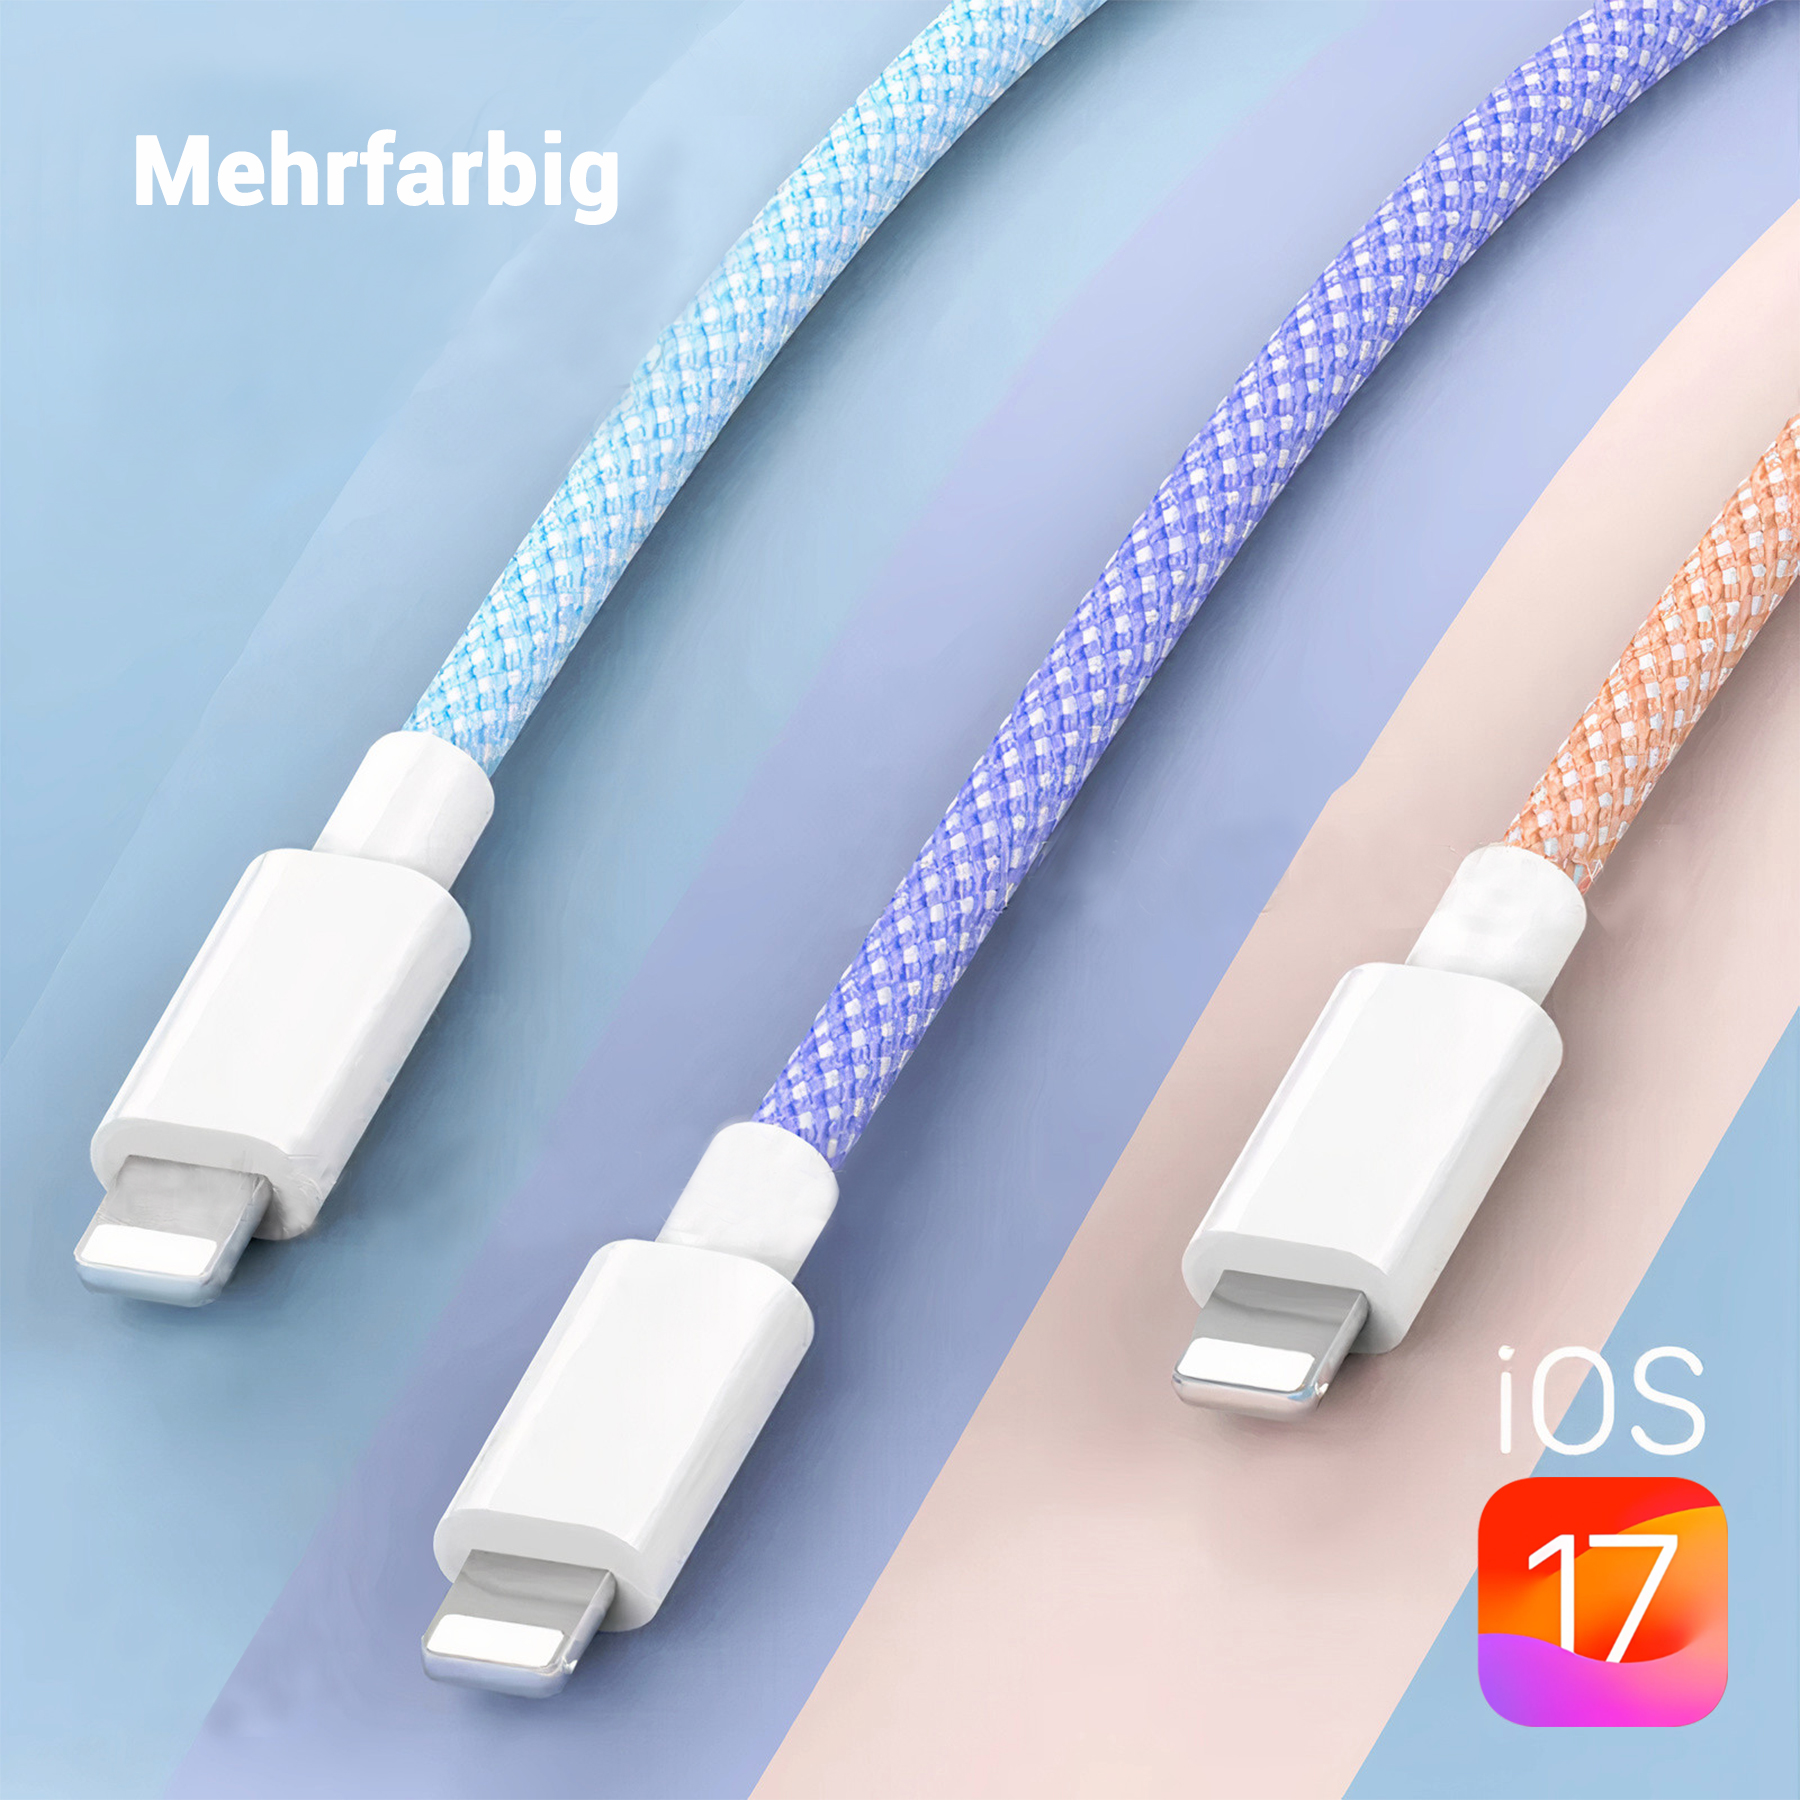 XTREMES iPhone Lightning USB-C iphone zu Kabel, 2 USB-C Datenkabel, und Lightning (Orange), Apple Orange ladekabel m, iphone und Datenkabel ladekabel